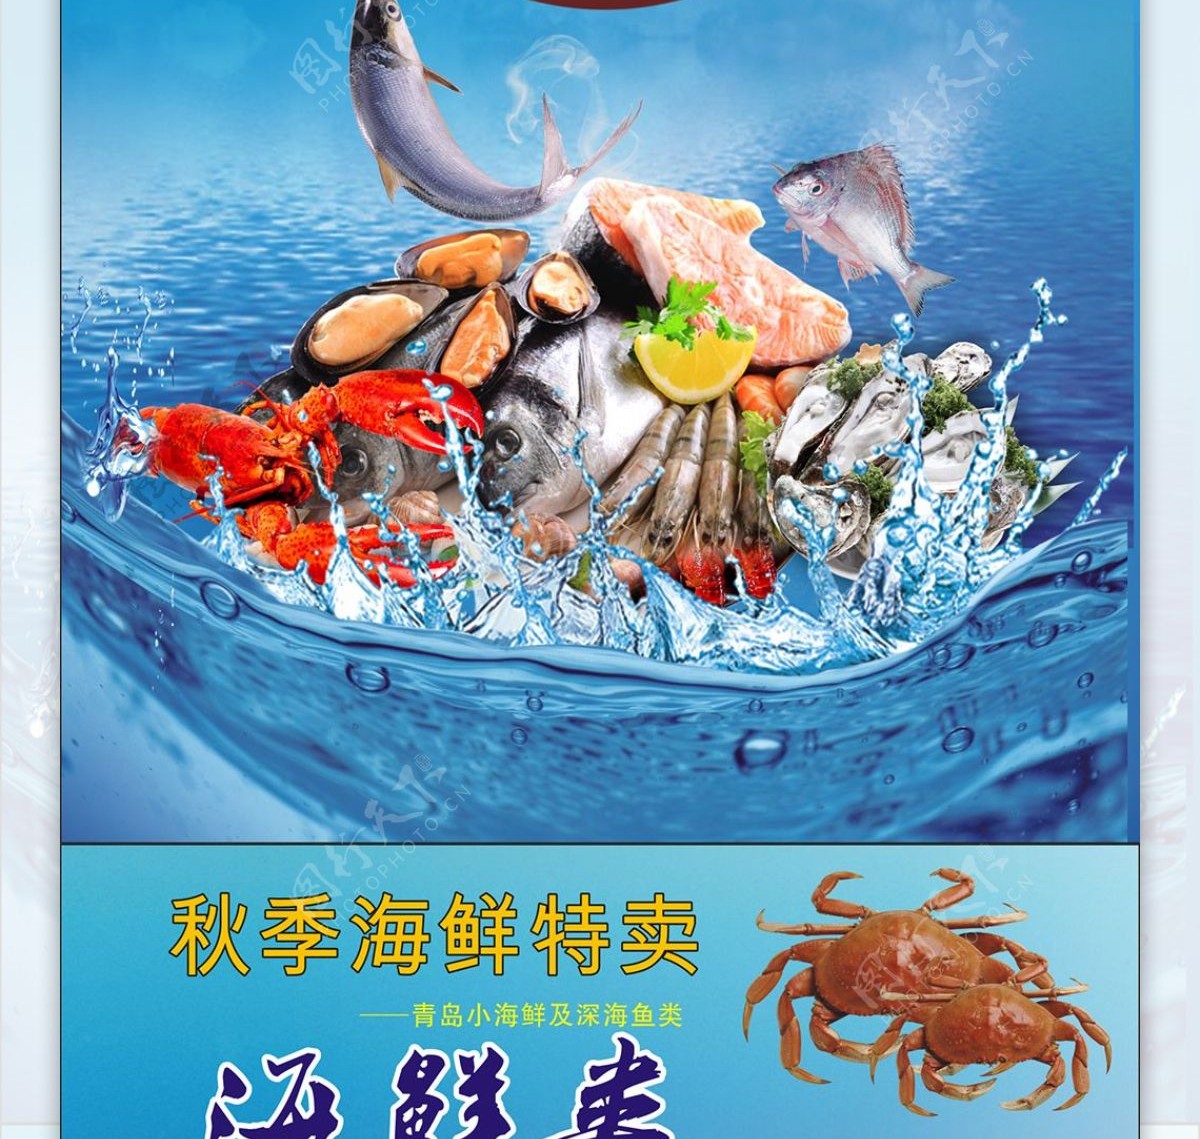 菜牌菜谱菜单蓝色美食海鲜上市开业促销海报